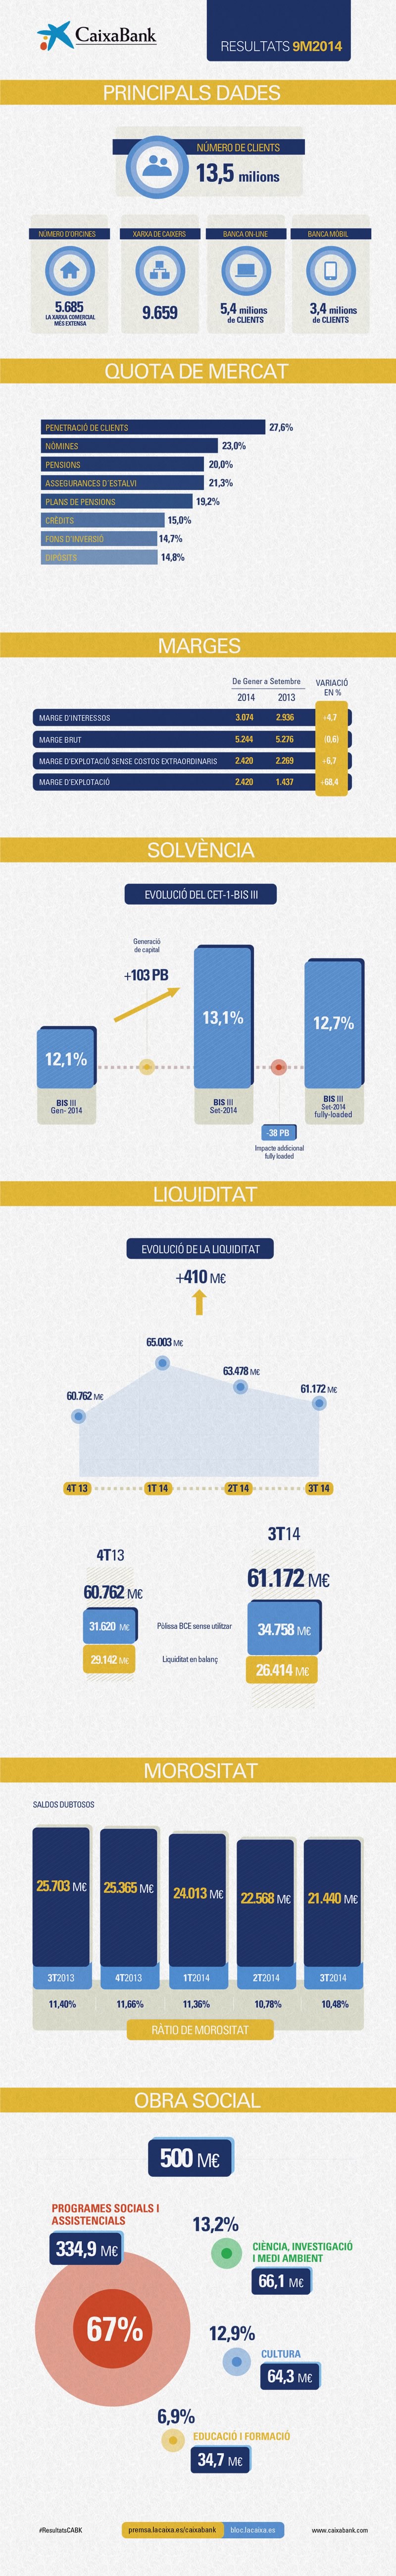 Infografia de resultats de CaixaBank 9M2014